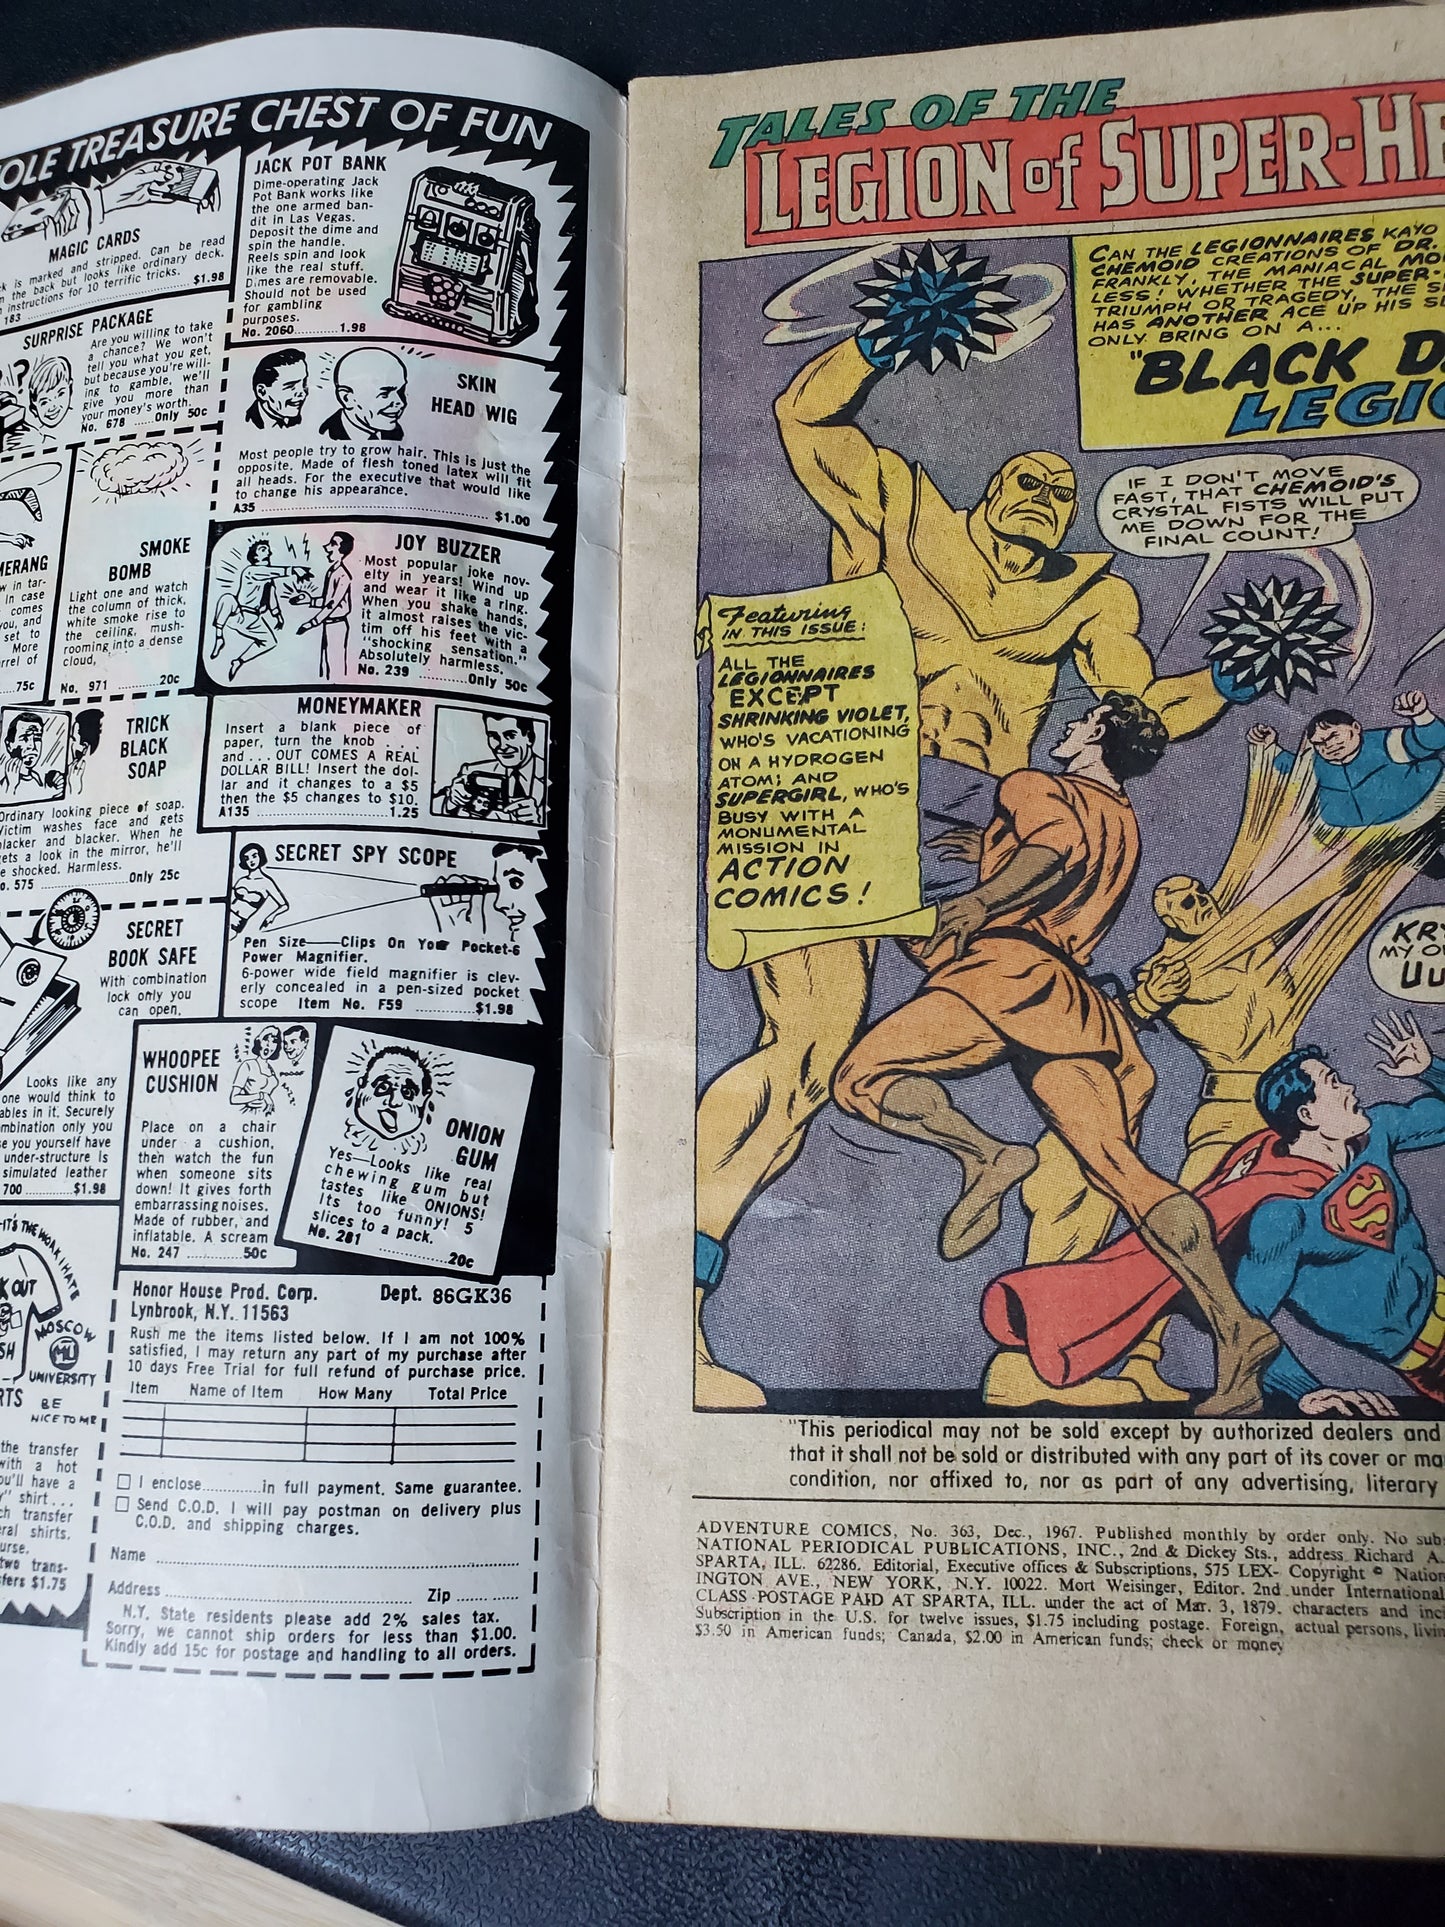 DC Adventure Comics Vol 1 #363 Superboy and Legion of Super-Heroes